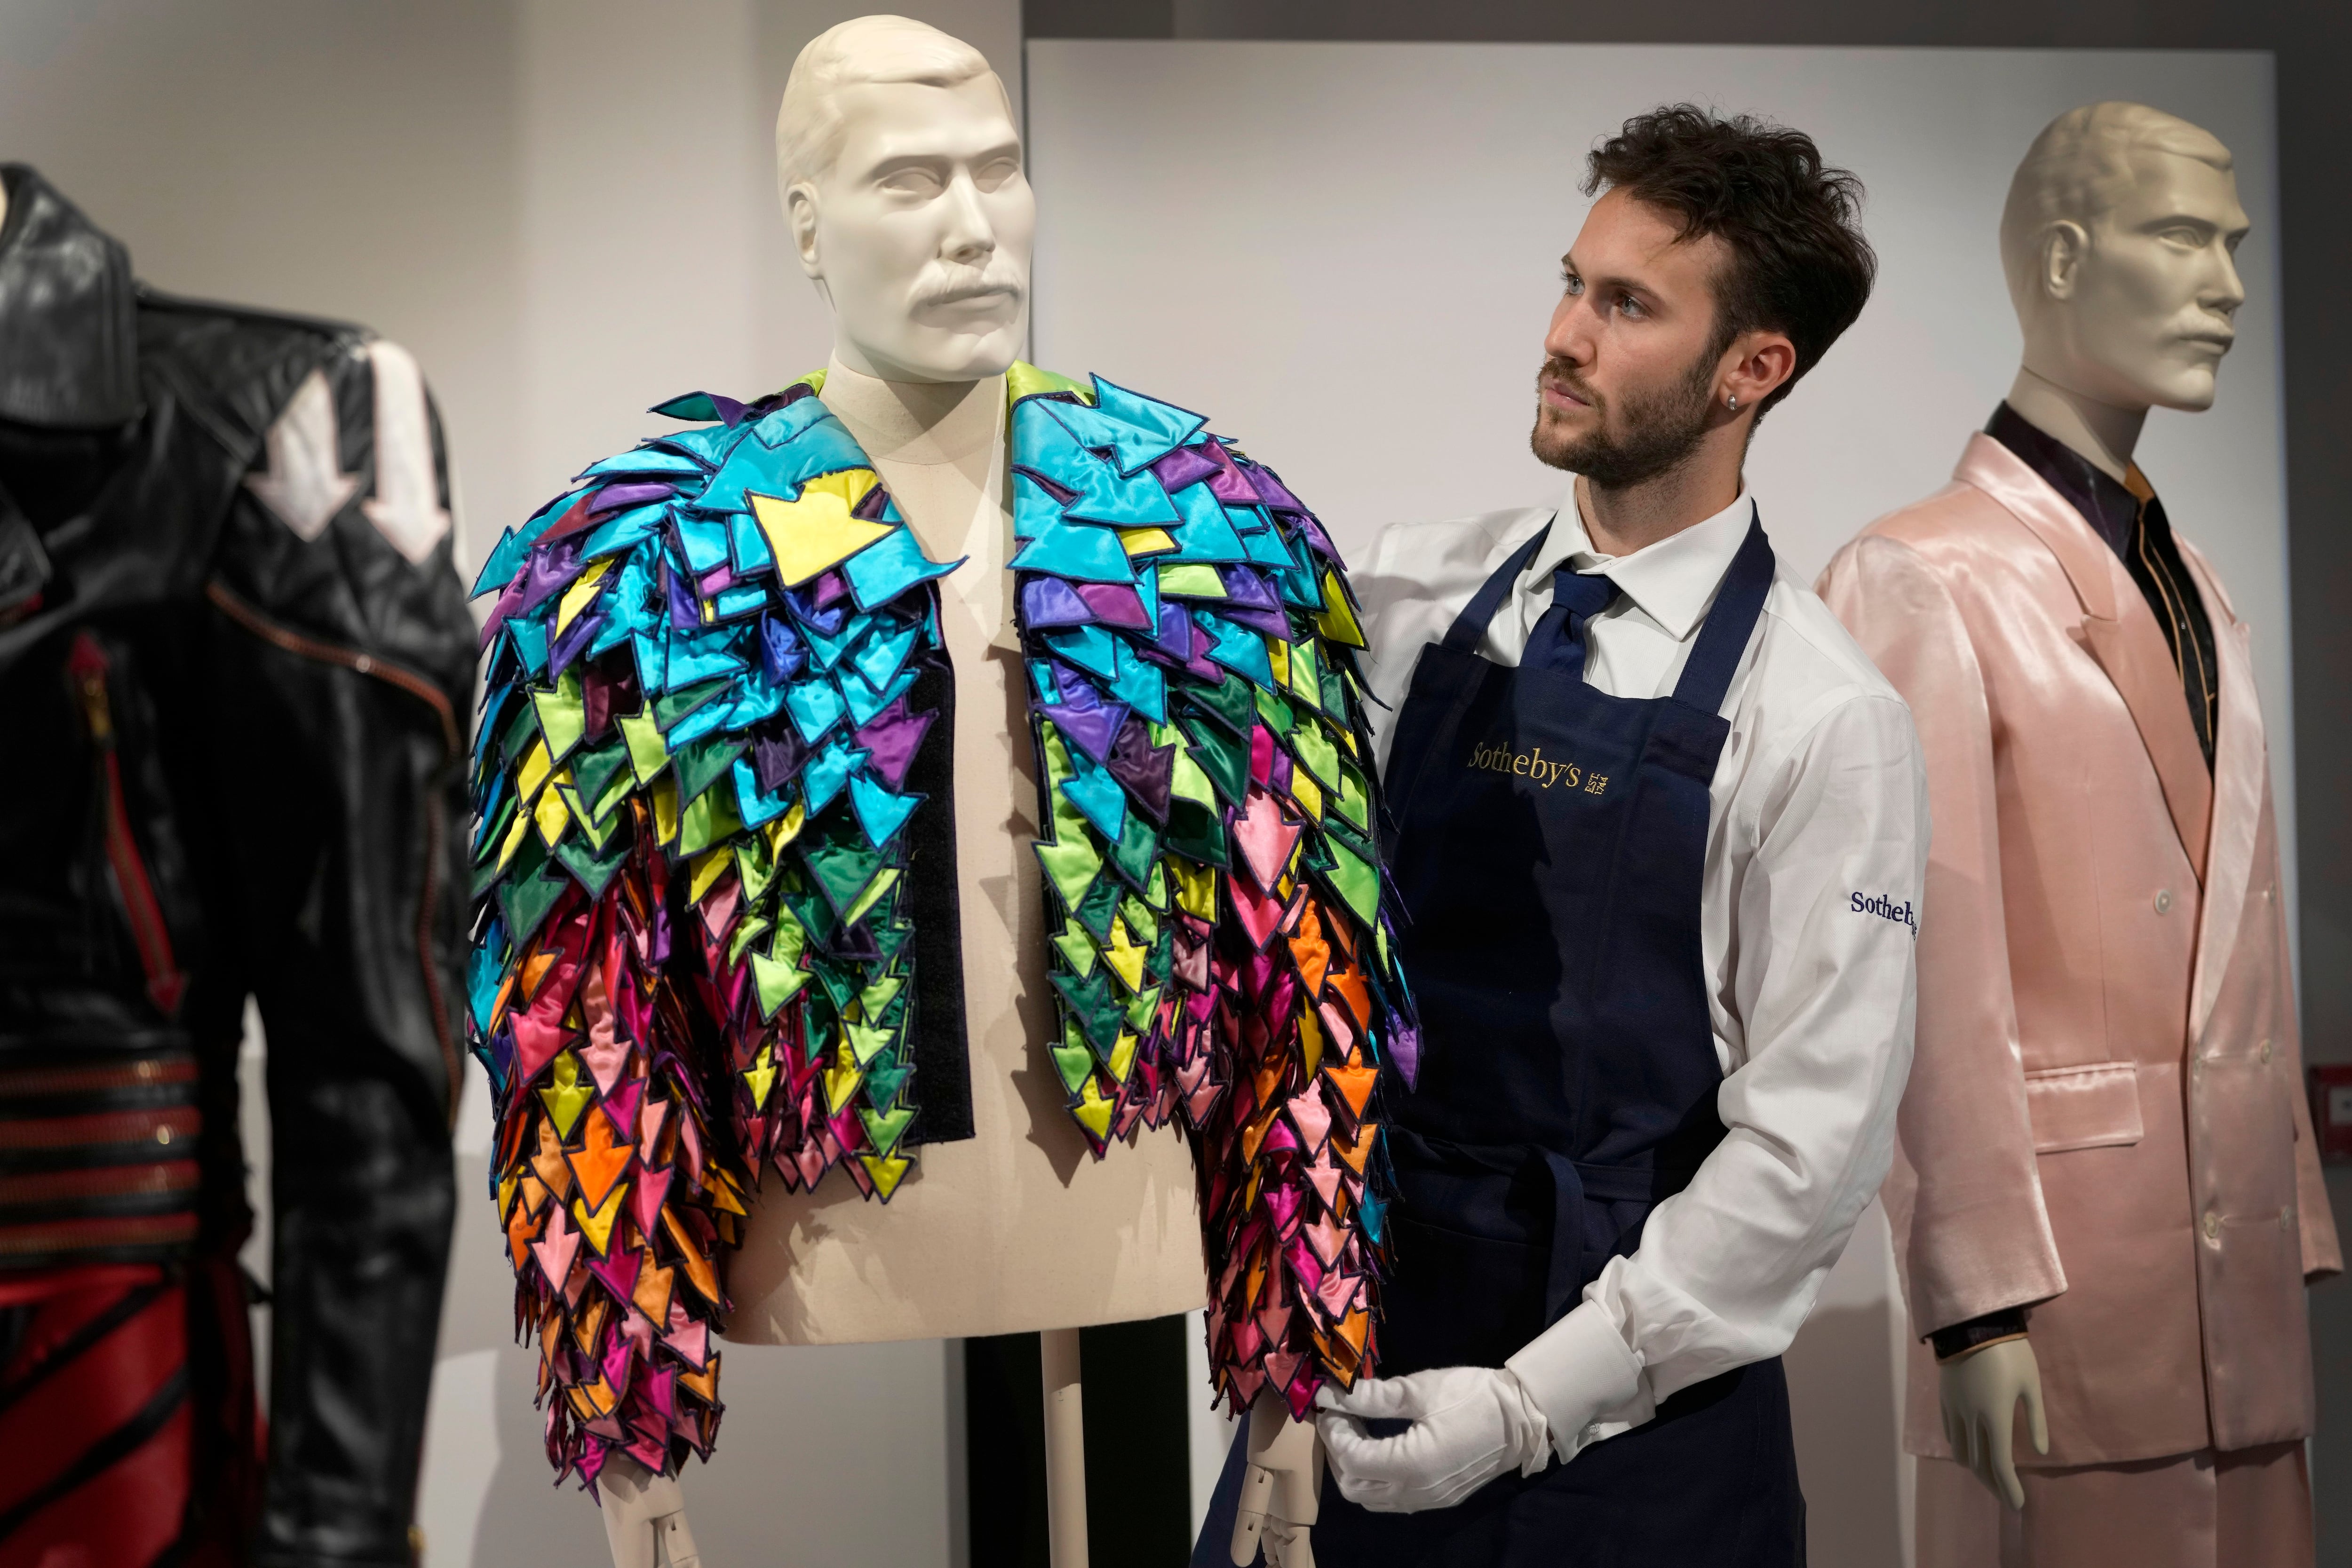 Un empleado de Sotheby's muestra una chaqueta con apliques de flechas de satén de color arcoiris de 1982 en las salas de la casa de subastas de Sotheby's en Londres (AP/Kirsty Wigglesworth)